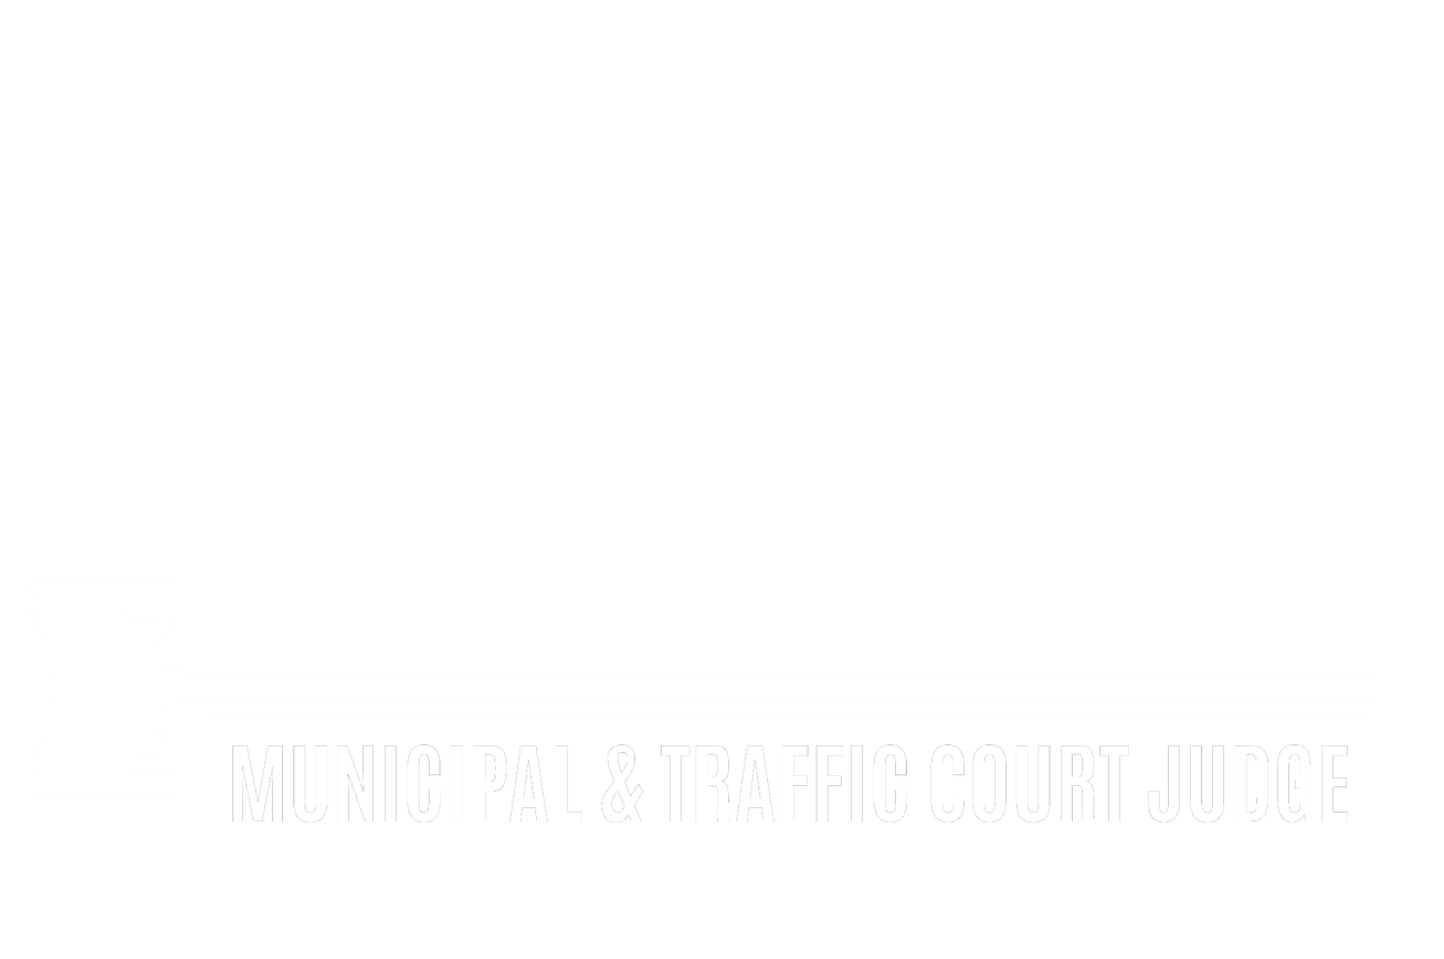 Charlene Larche-Mason Municipal & Traffic Court Judge